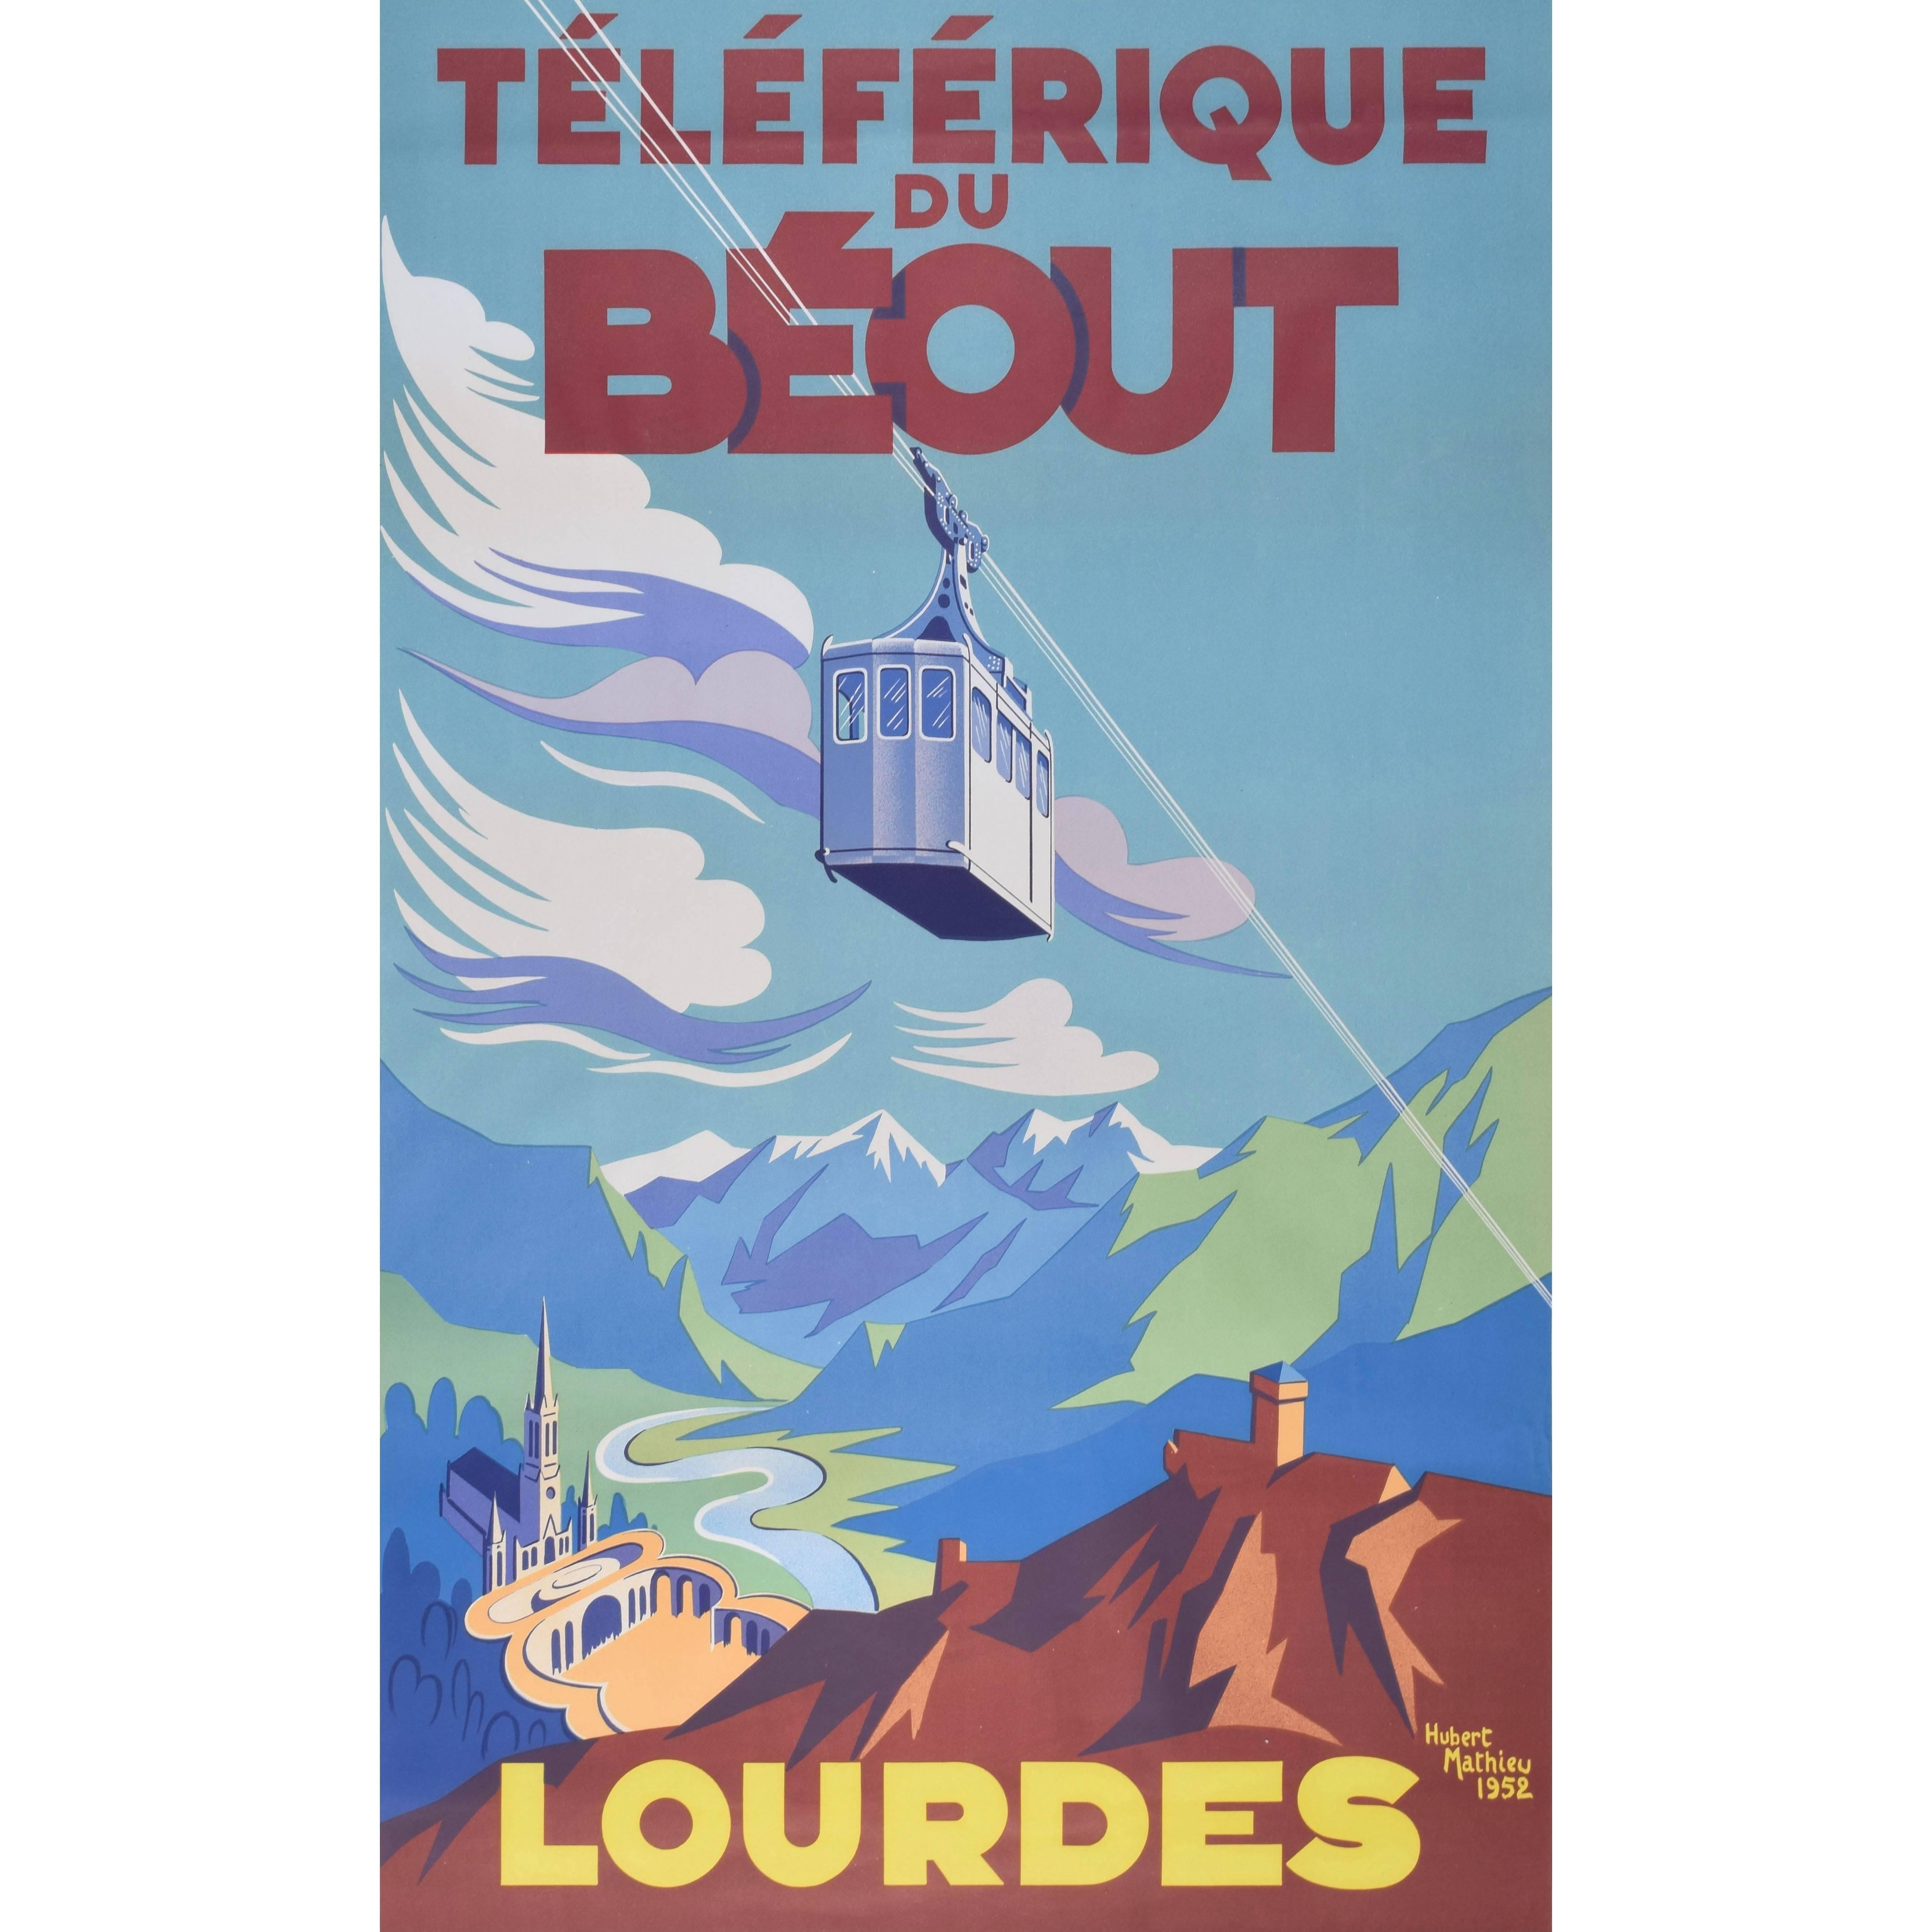 Lourdes 1952 Téléferique du Béout vintage ski poster von Hubert Mathieu